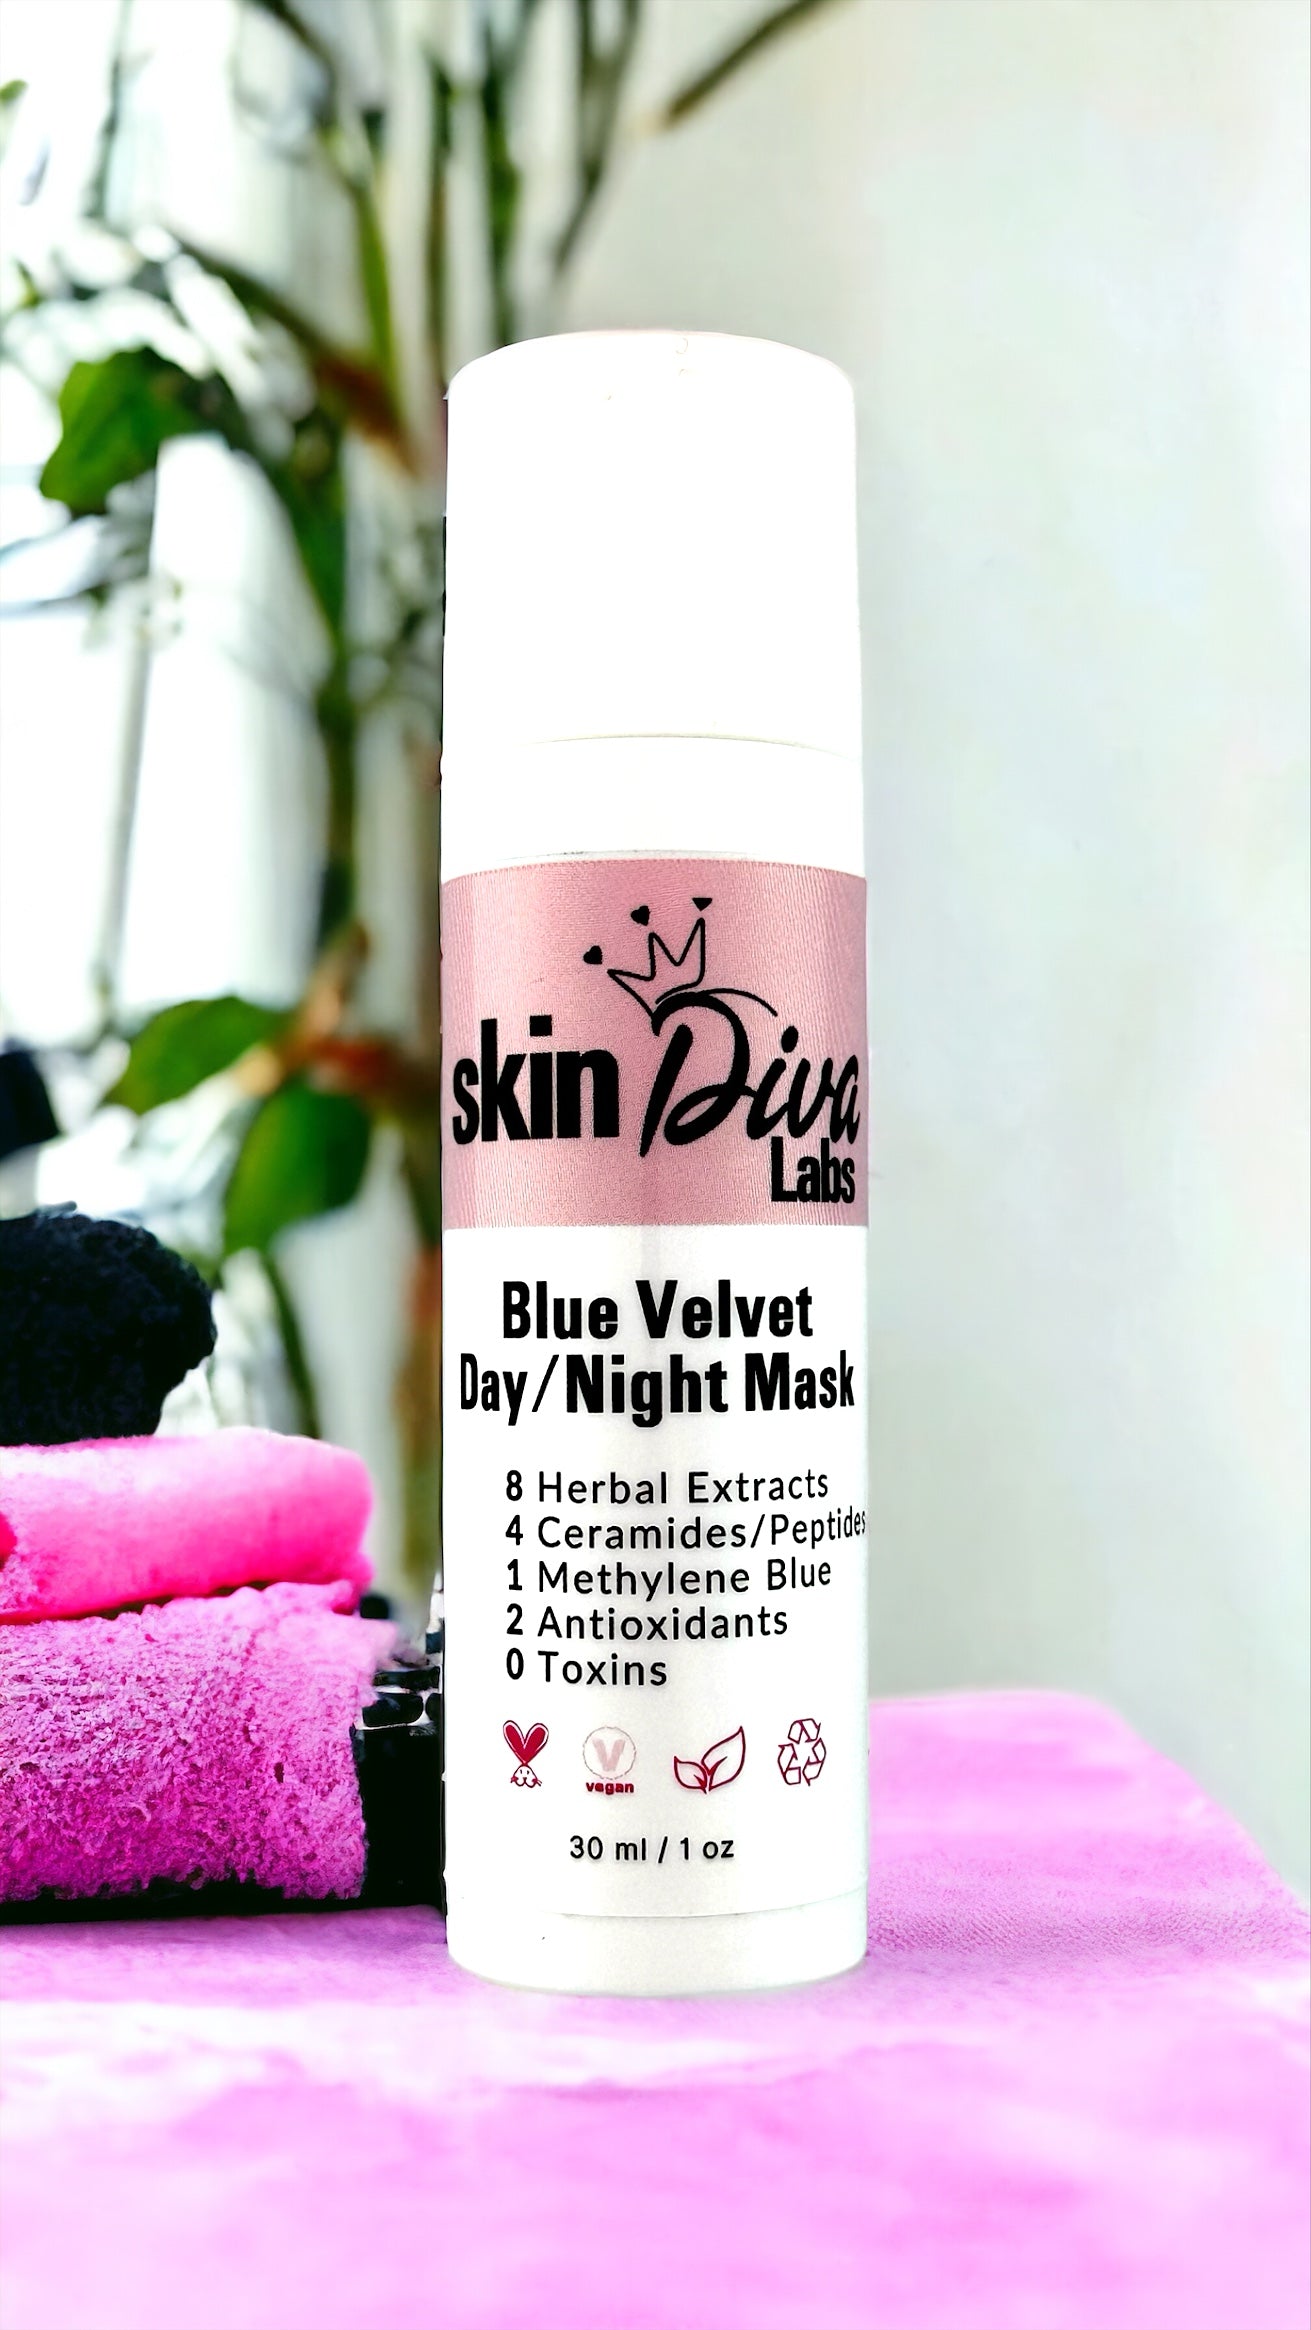 Blue Velvet Day/Night Mask by Skin Diva Labs - Vegan, Hyaluronic, Peptide Mask